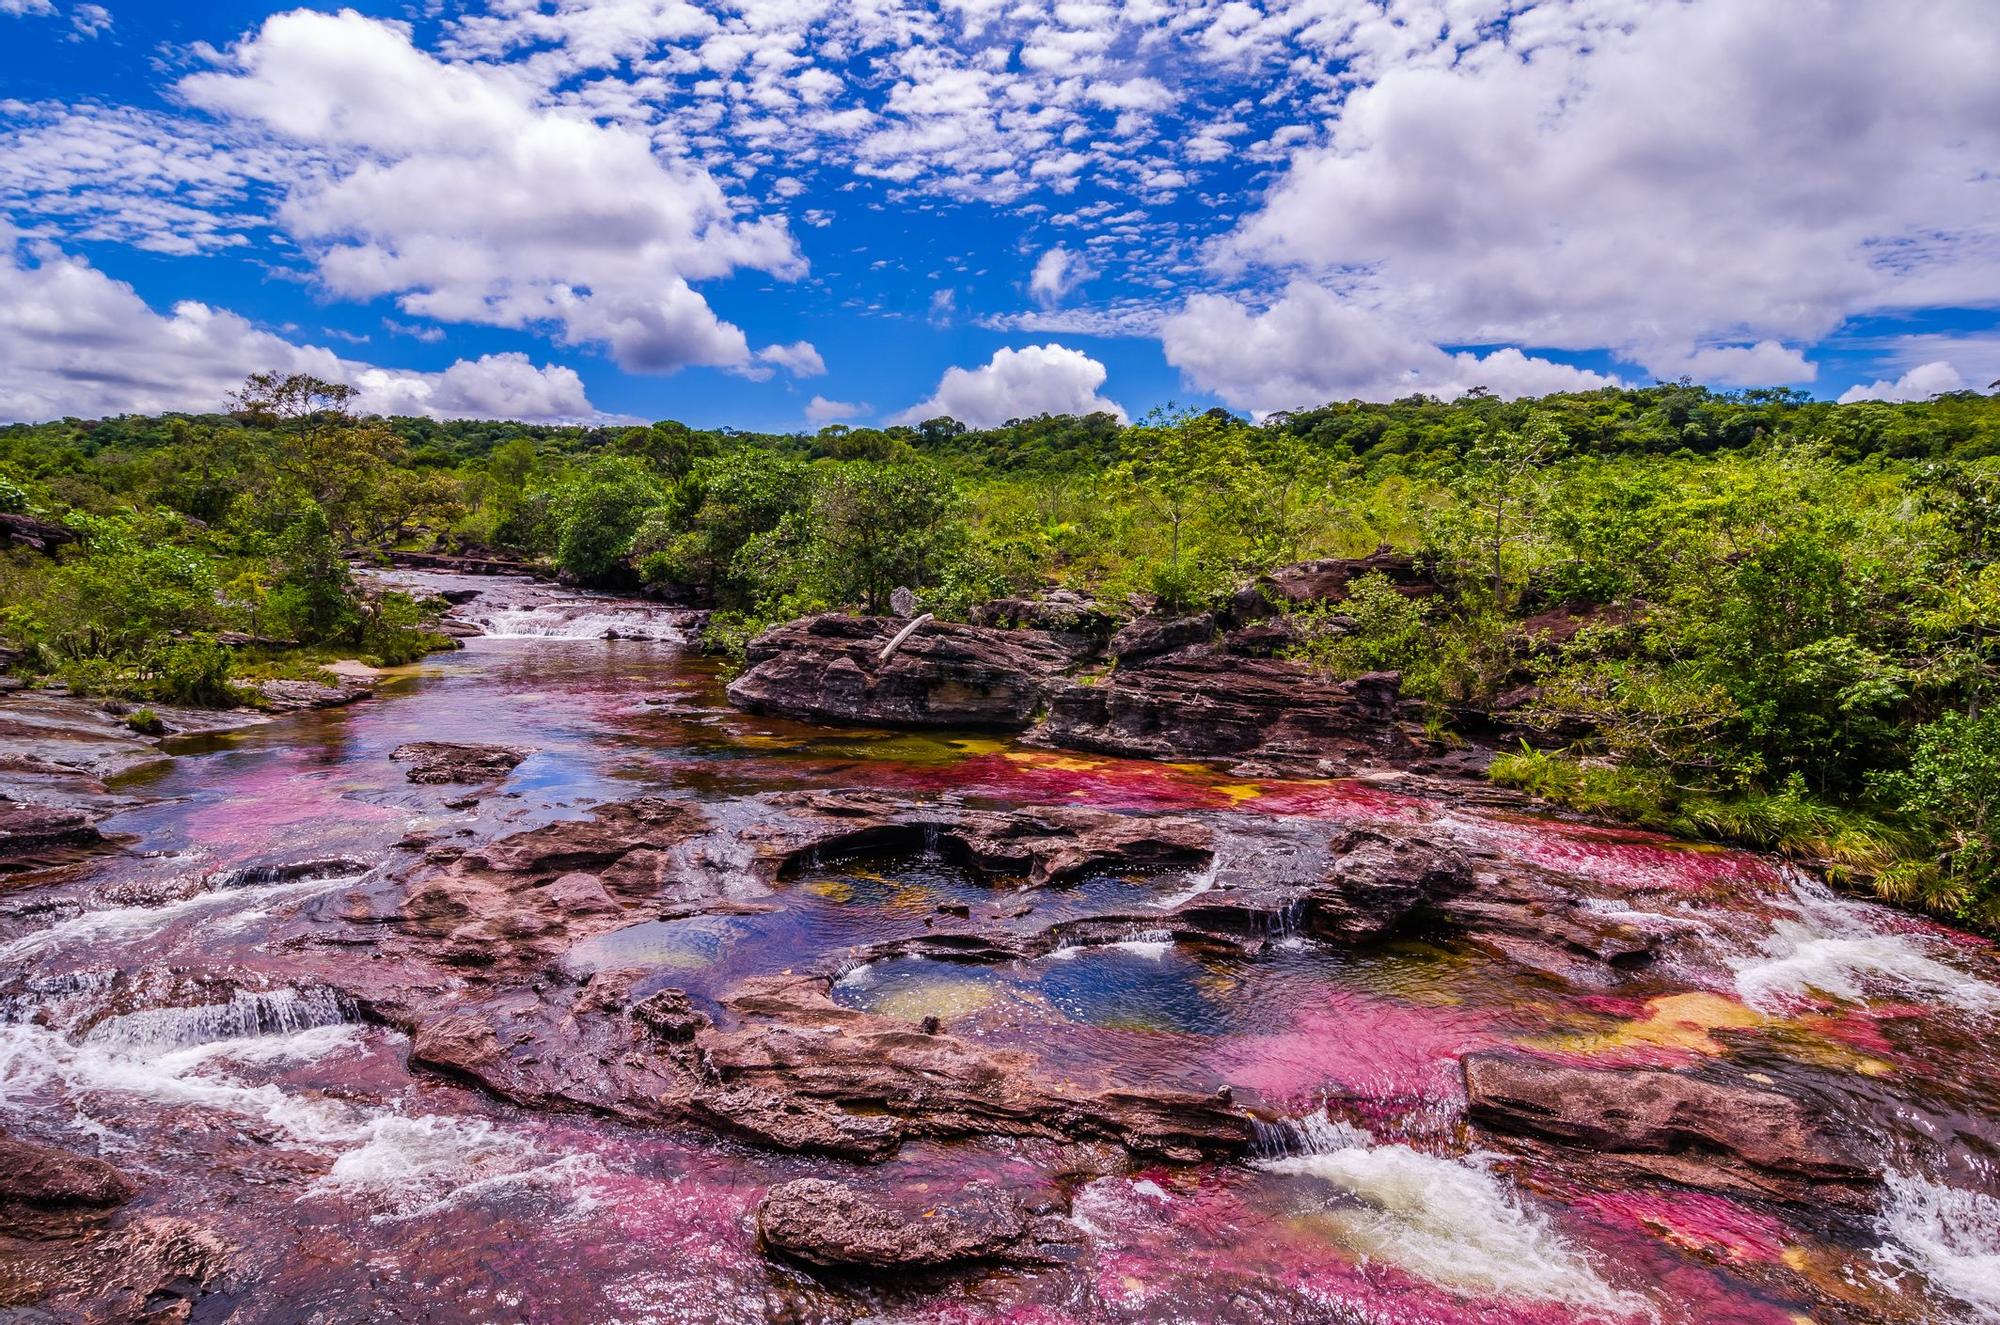 El paisaje colombiano se caracteriza por la biodiversidad y el color